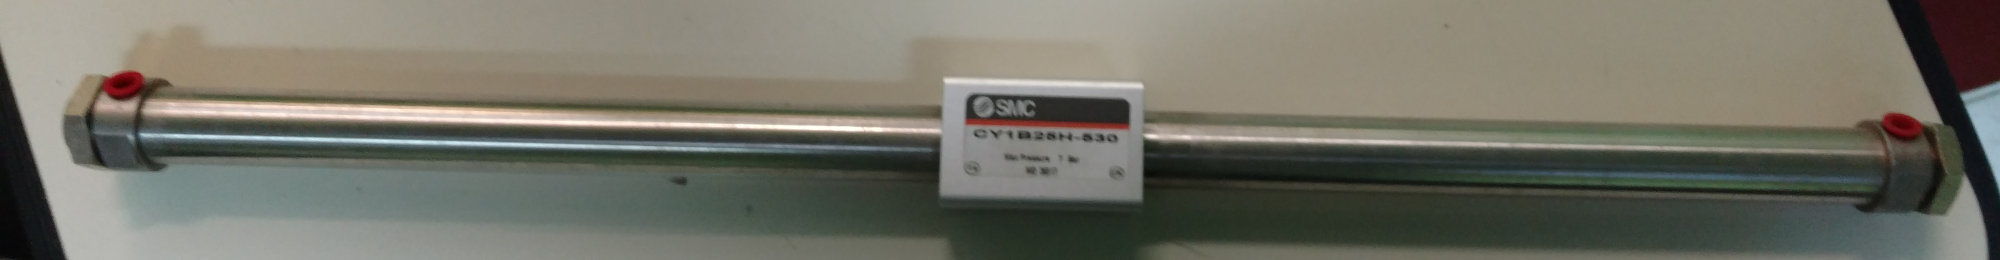 SMC INR-498-016C-X007 